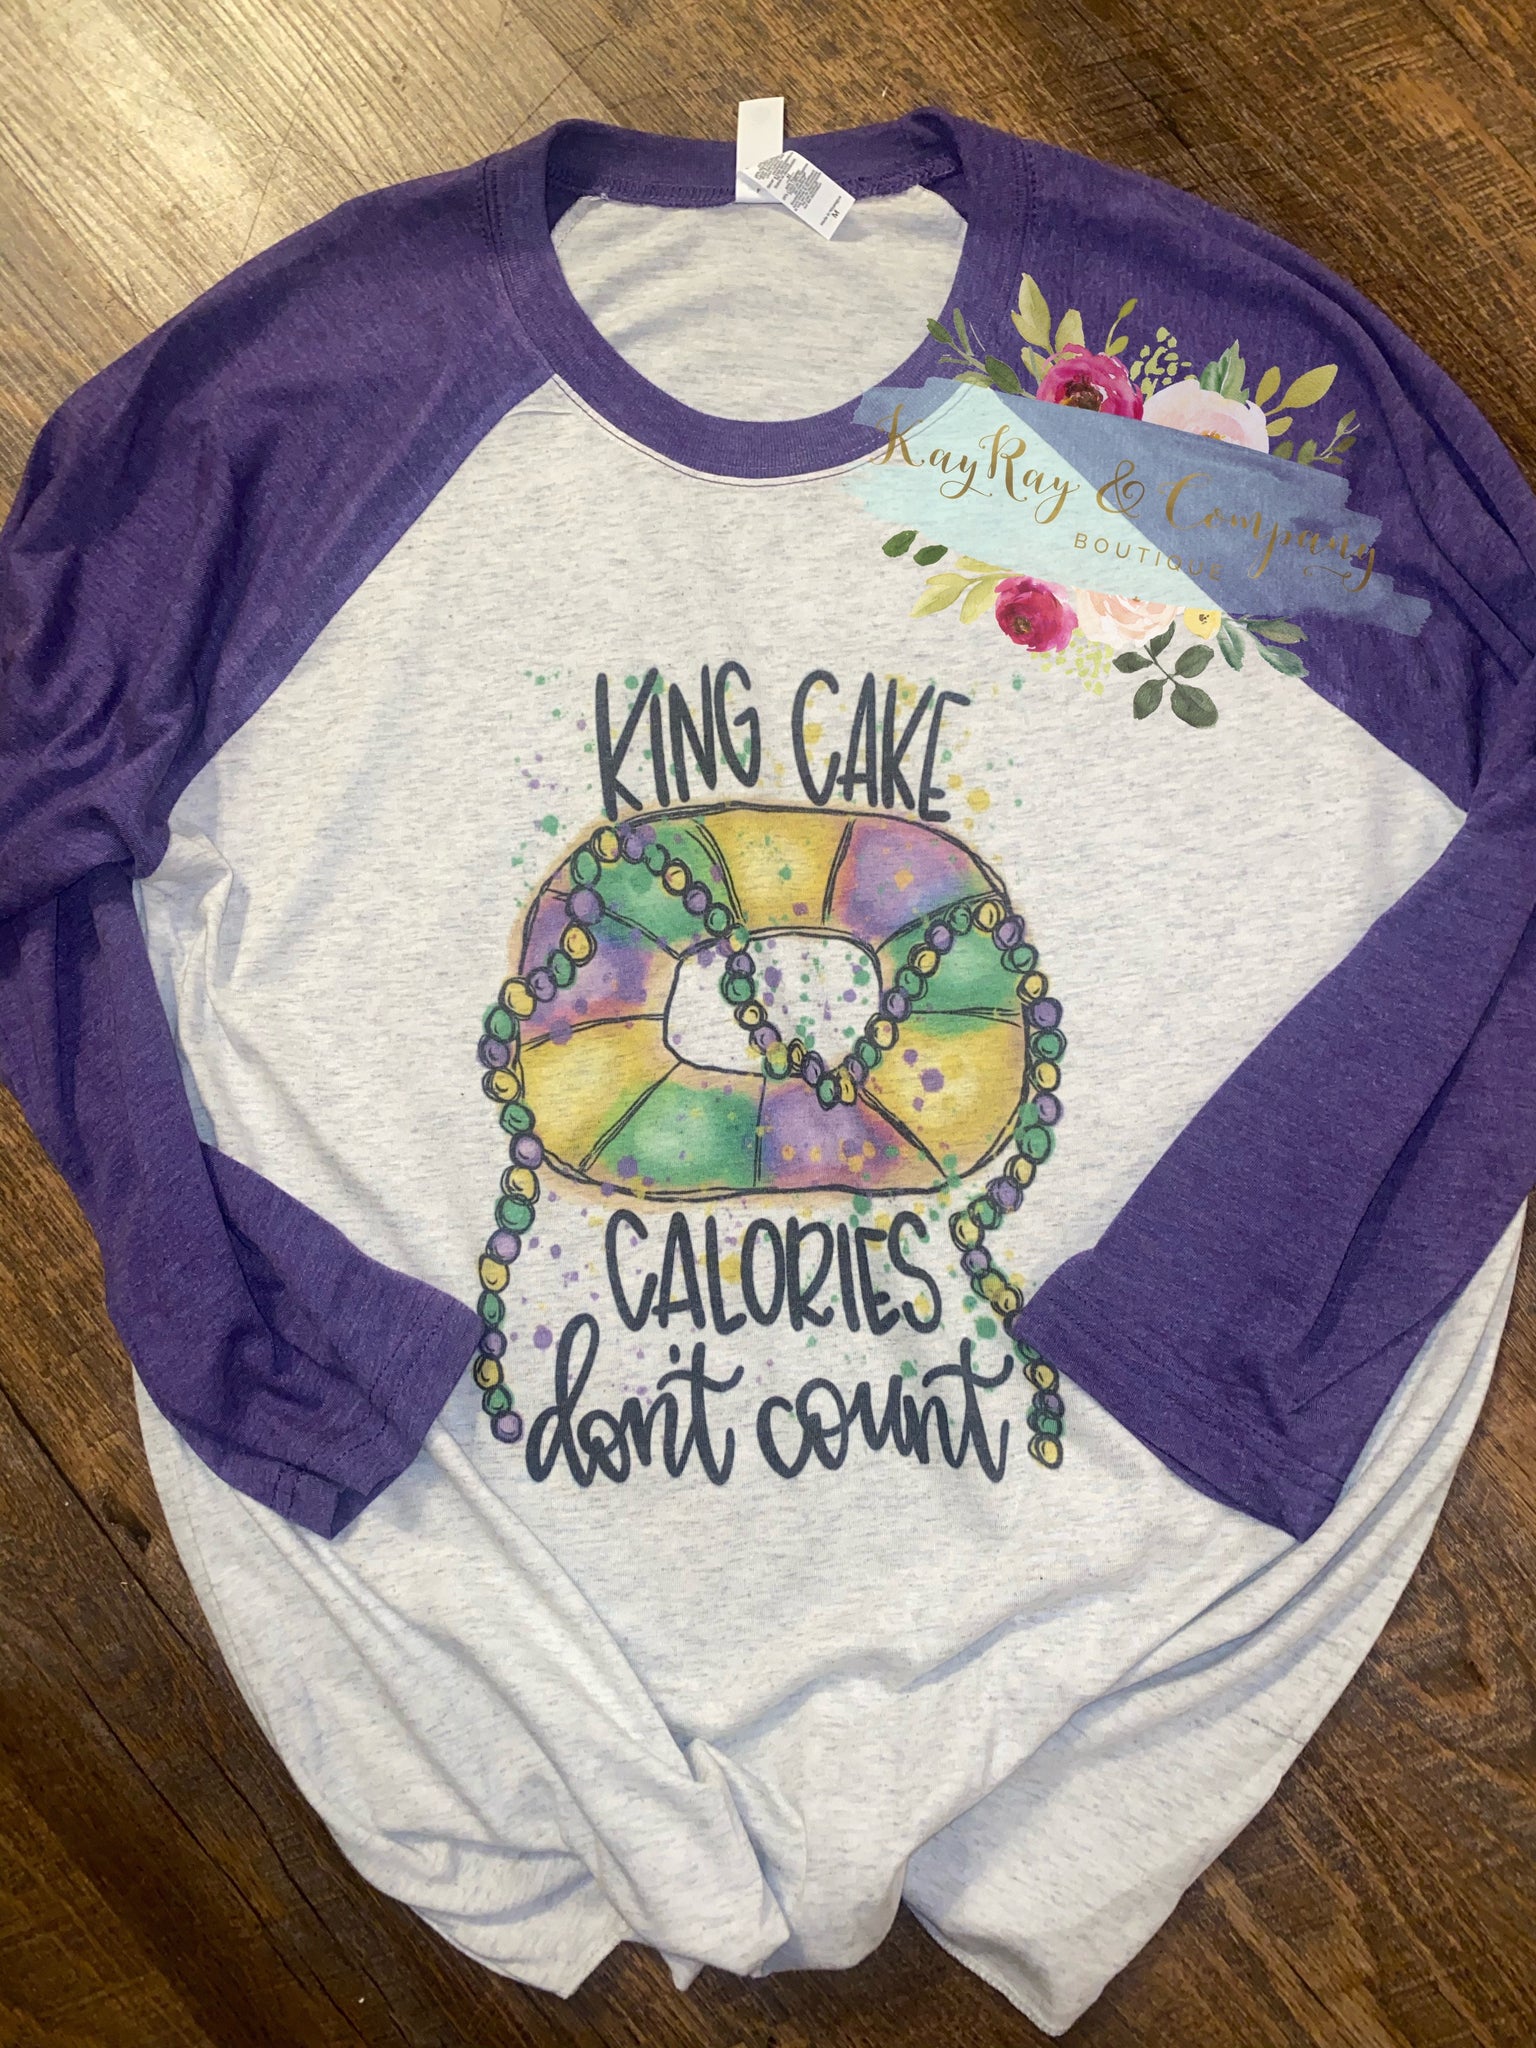 King cake calories don’t count Mardi Gras Raglan T-shirt